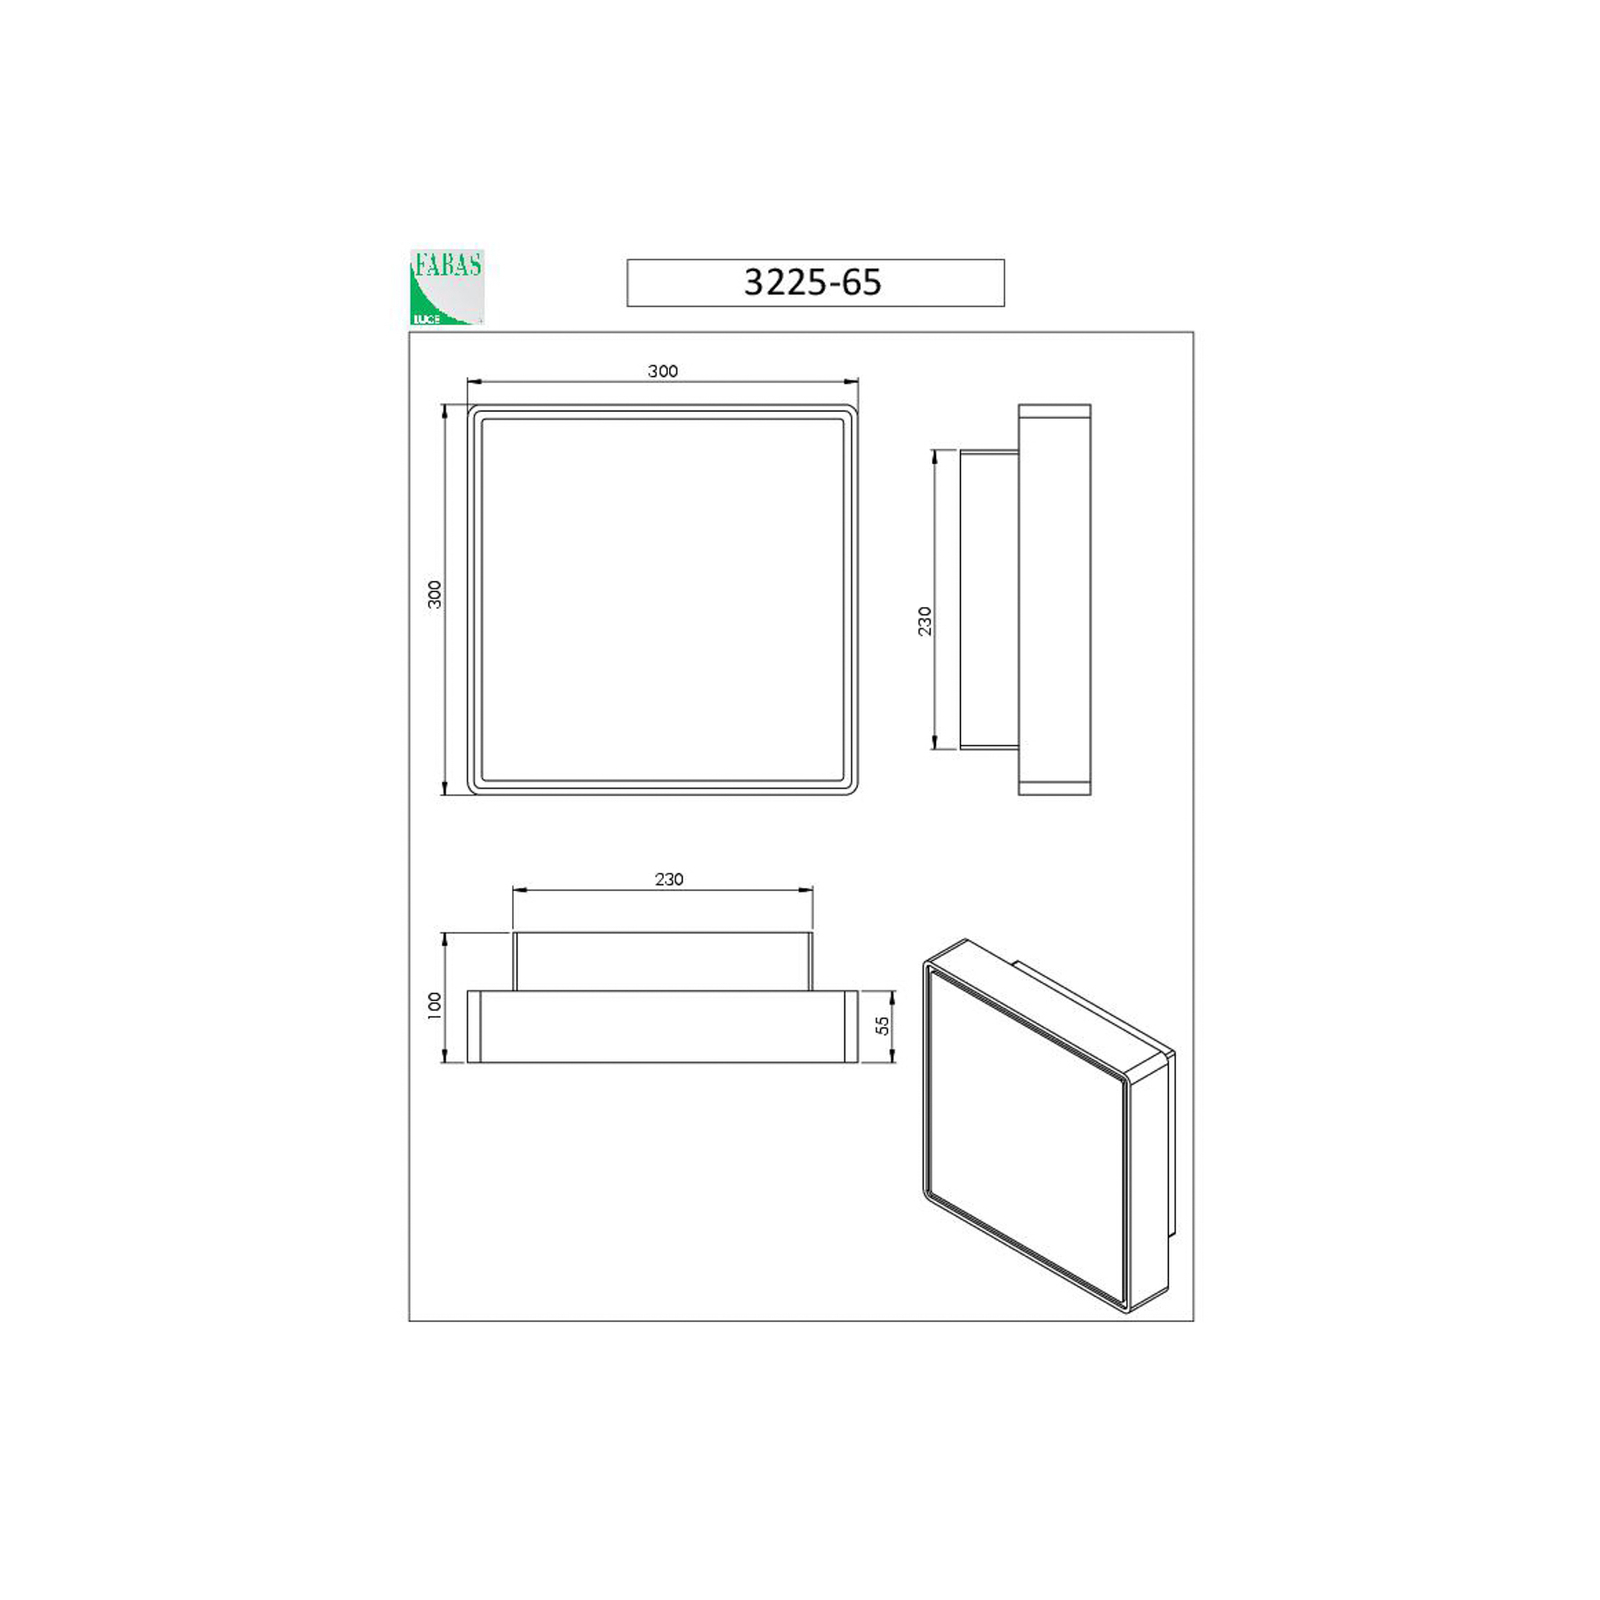 Φωτιστικό τοίχου Oban, 30 cm x 30 cm, αισθητήρας, 2 x E27, λευκό, IP65